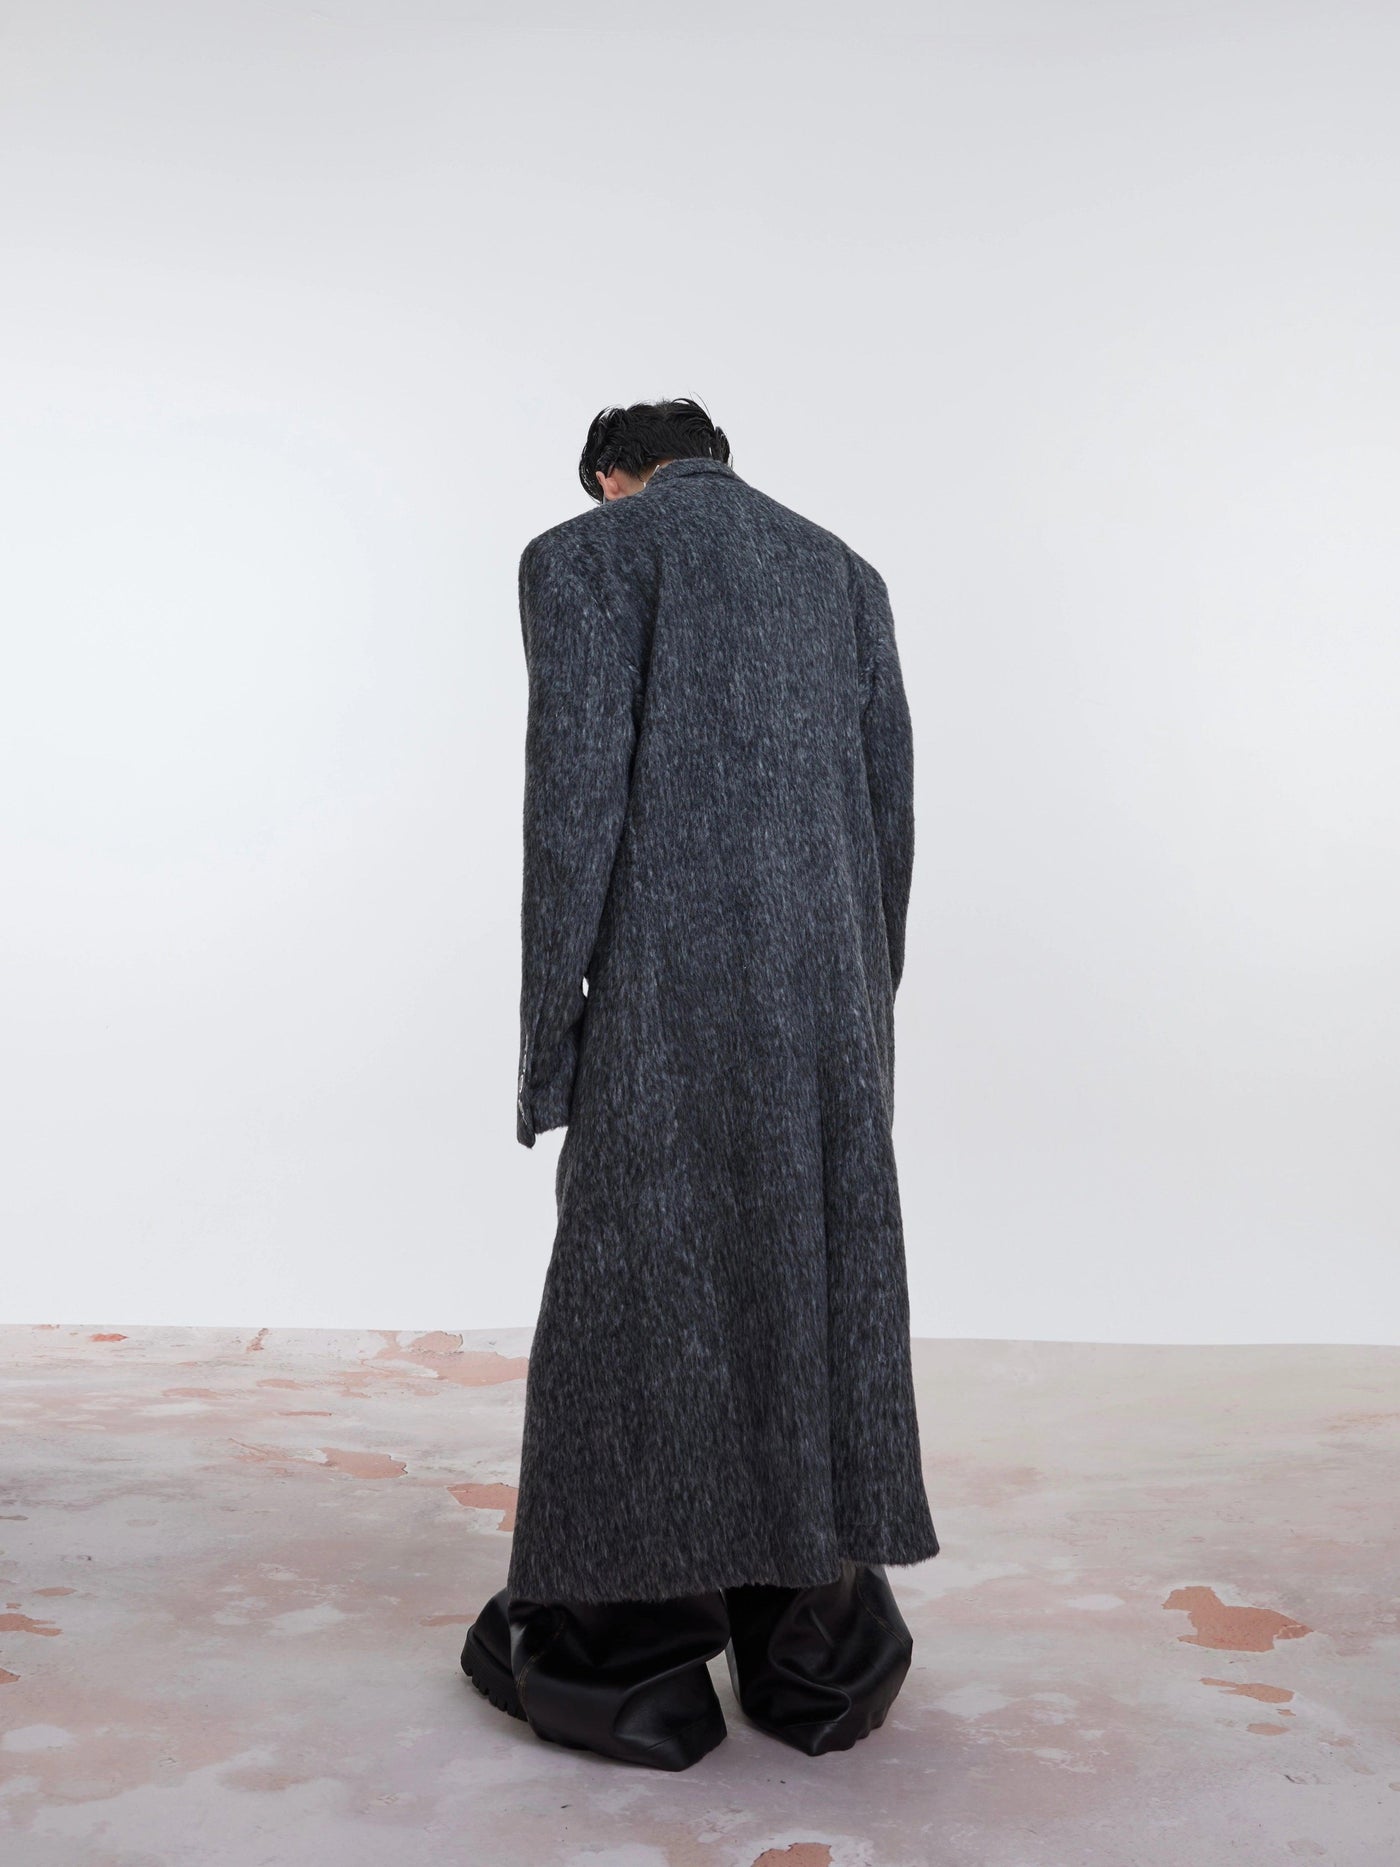 Mohair Peak Lapel Long Coat Korean Street Fashion Long Coat By Argue Culture Shop Online at OH Vault